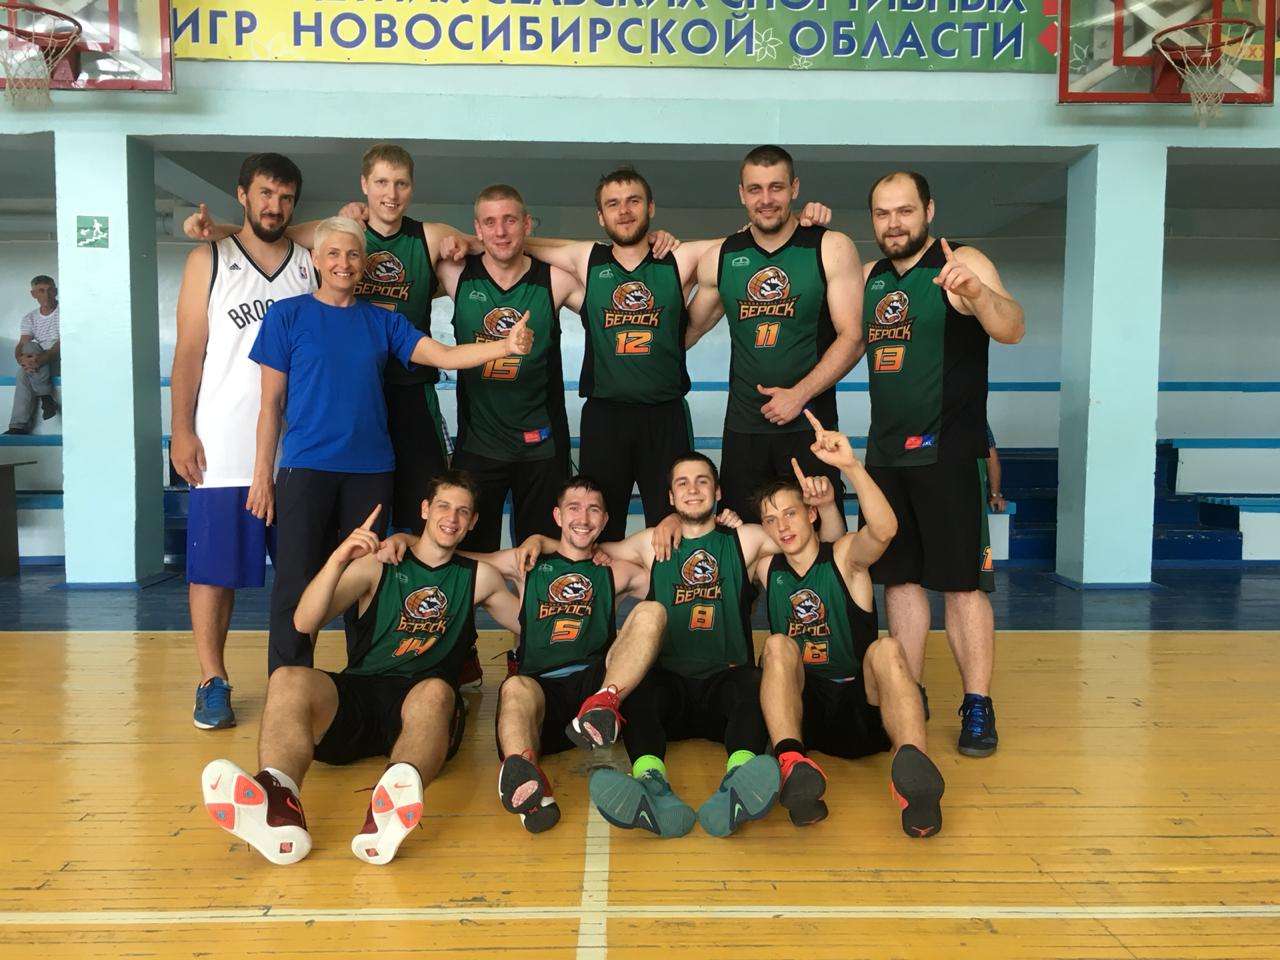 Баскетболисты из Бердска подтвердили статус чемпионов в сельских играх